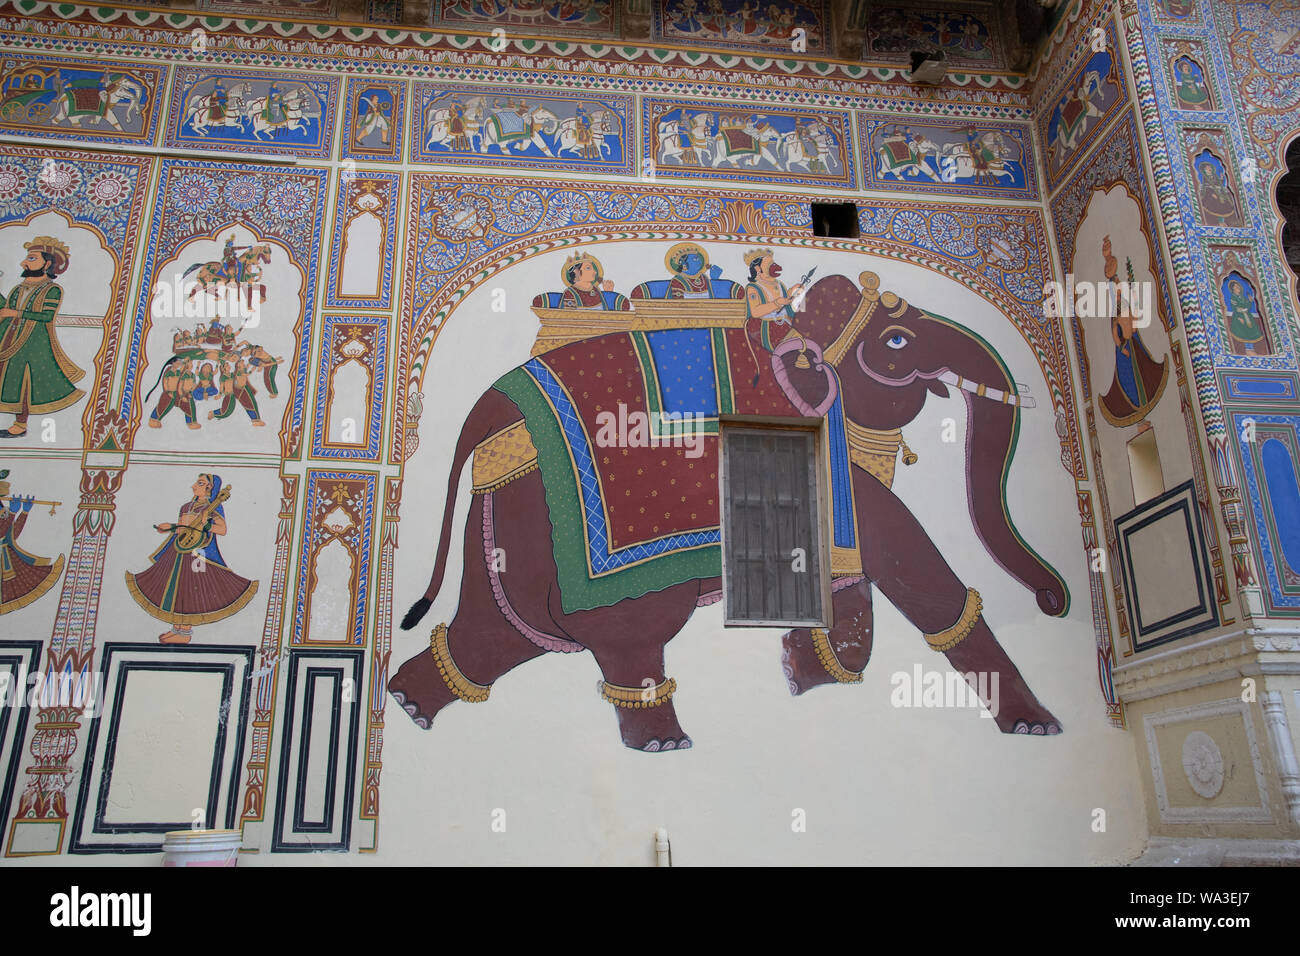 Links neben Hauptmotiv dem des Elefanten kann man die Malerei eines Elefanten und eines Pferdes sehen, welche aus Körpern von Menschen geformt werden Foto Stock